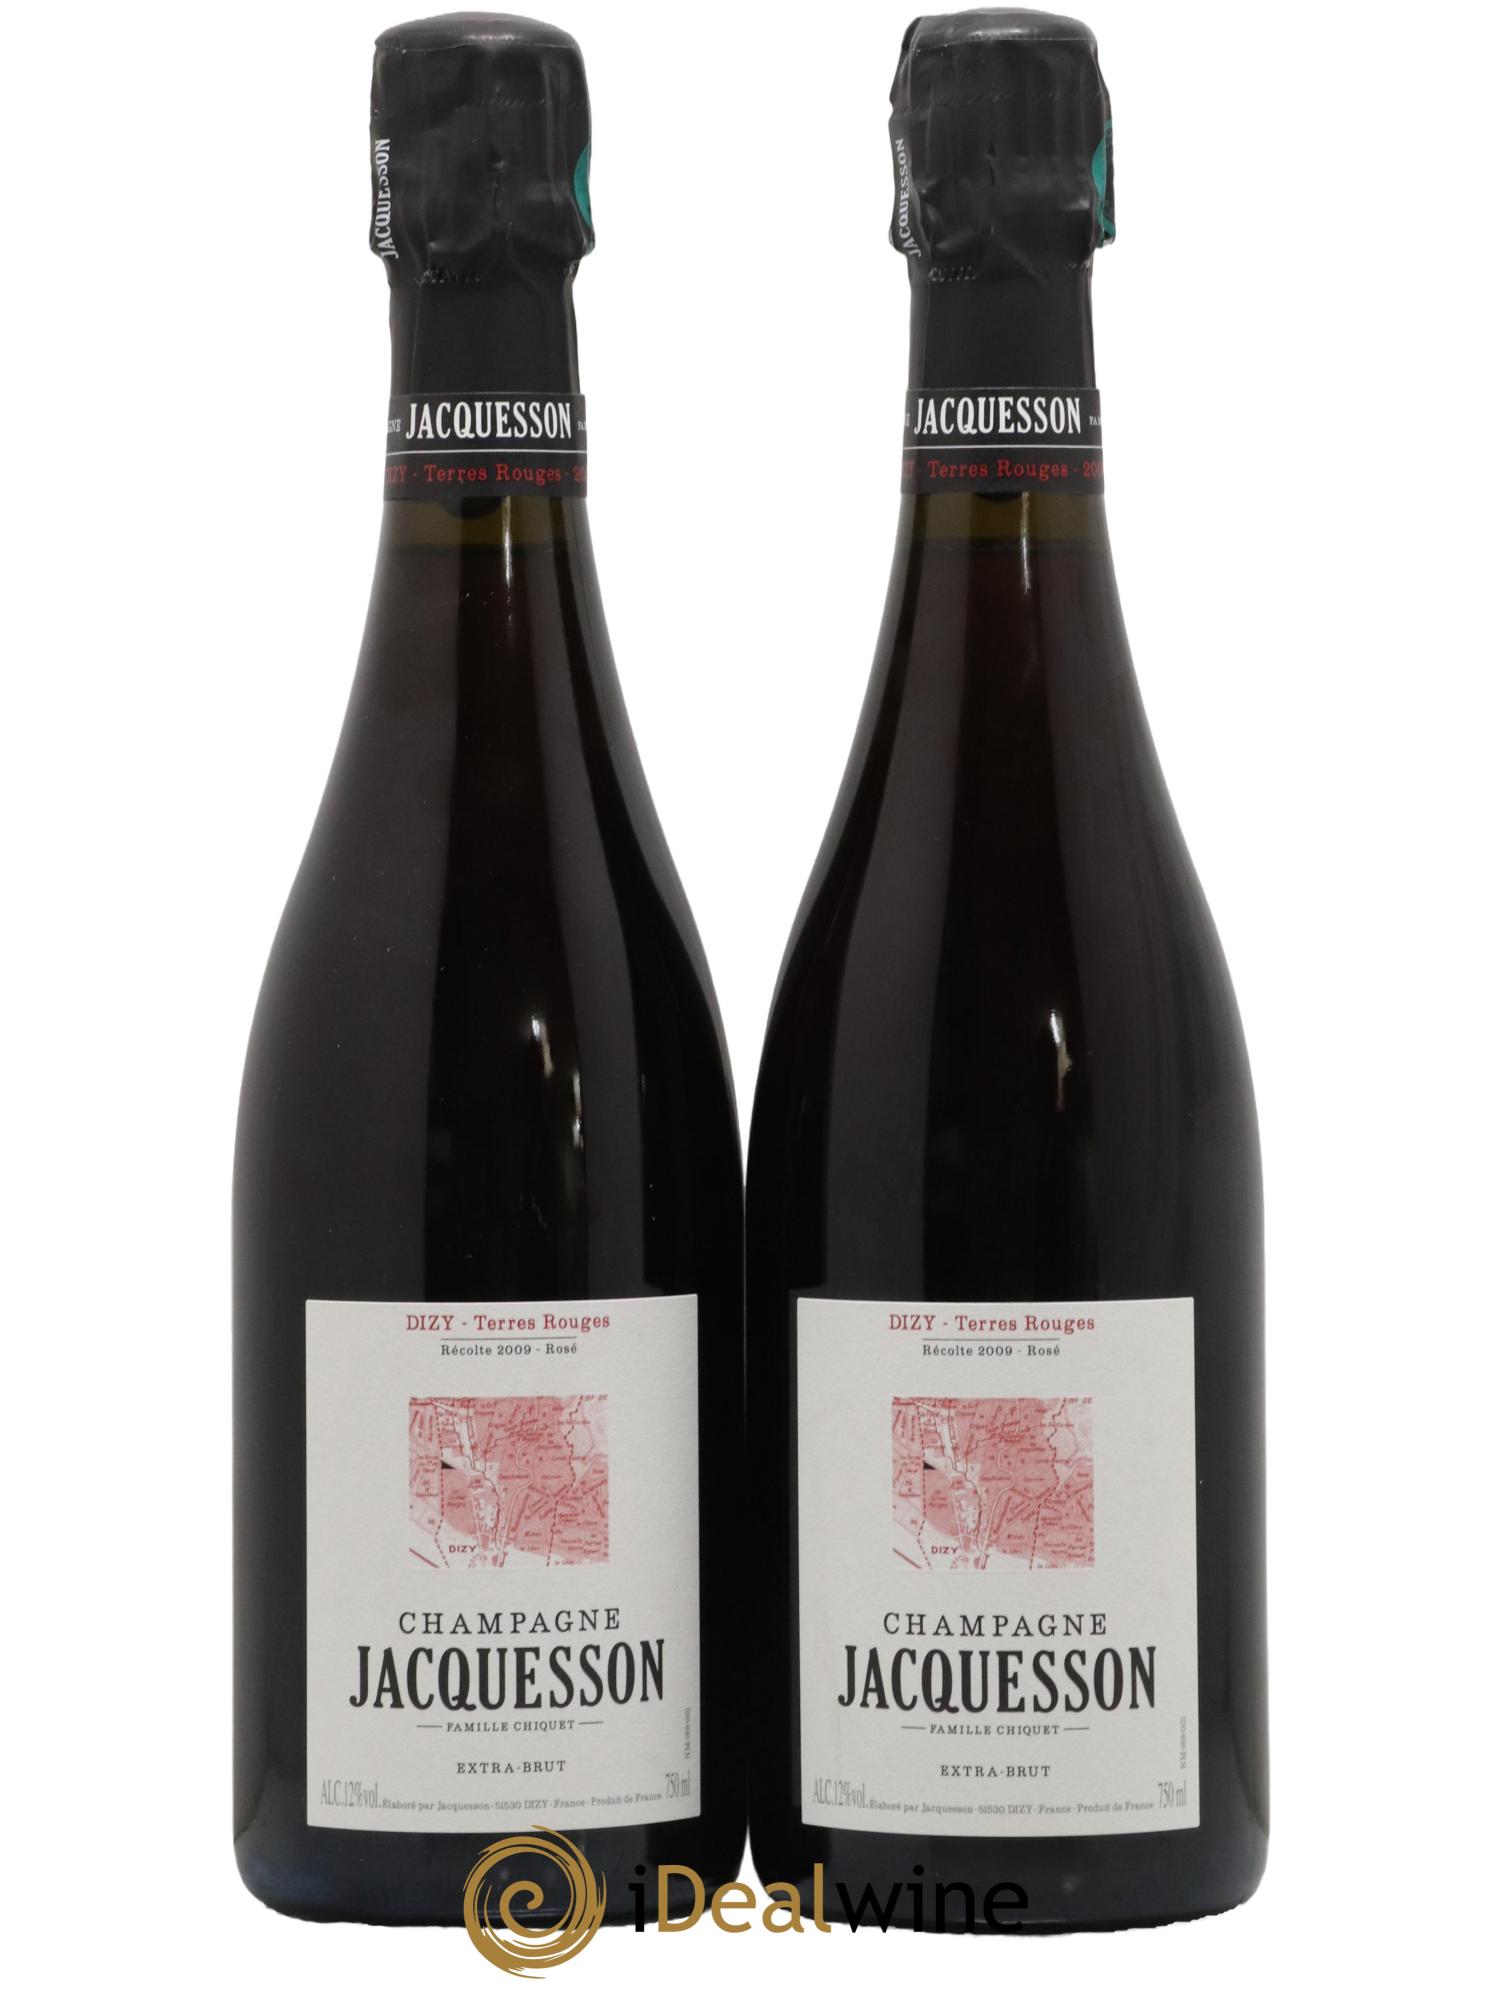 Champagne Jacquesson Dizy Terres Rouges (Rosé effervescent)